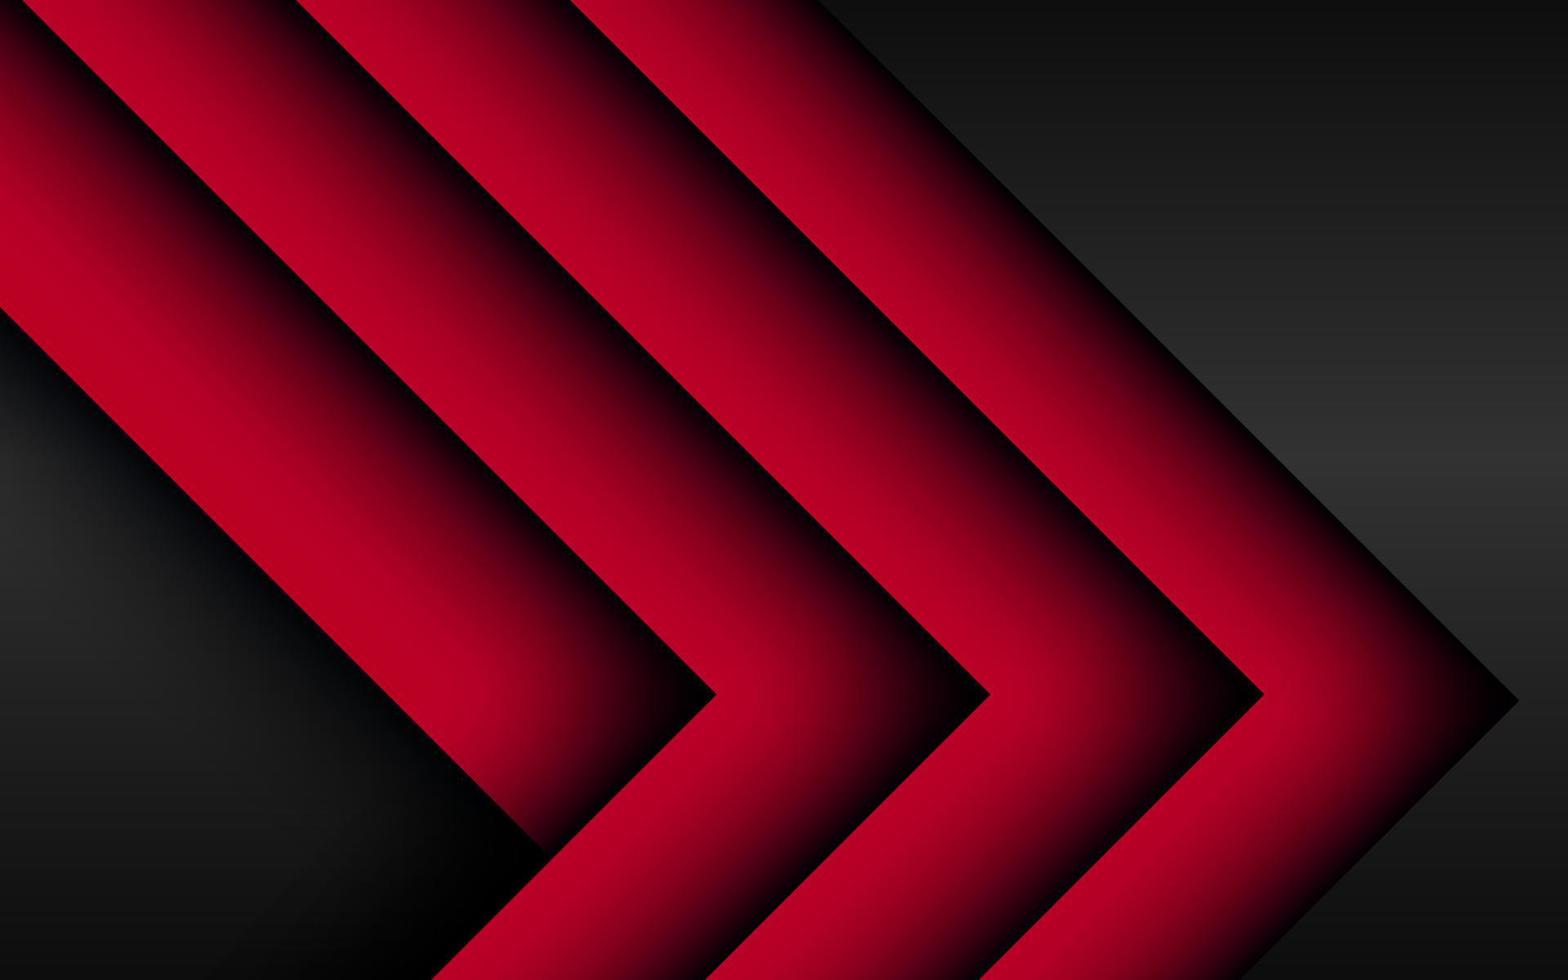 direção de seta vermelha abstrata em cinza escuro com fundo de tecnologia futurista moderna de design de espaço em branco. vetor eps10